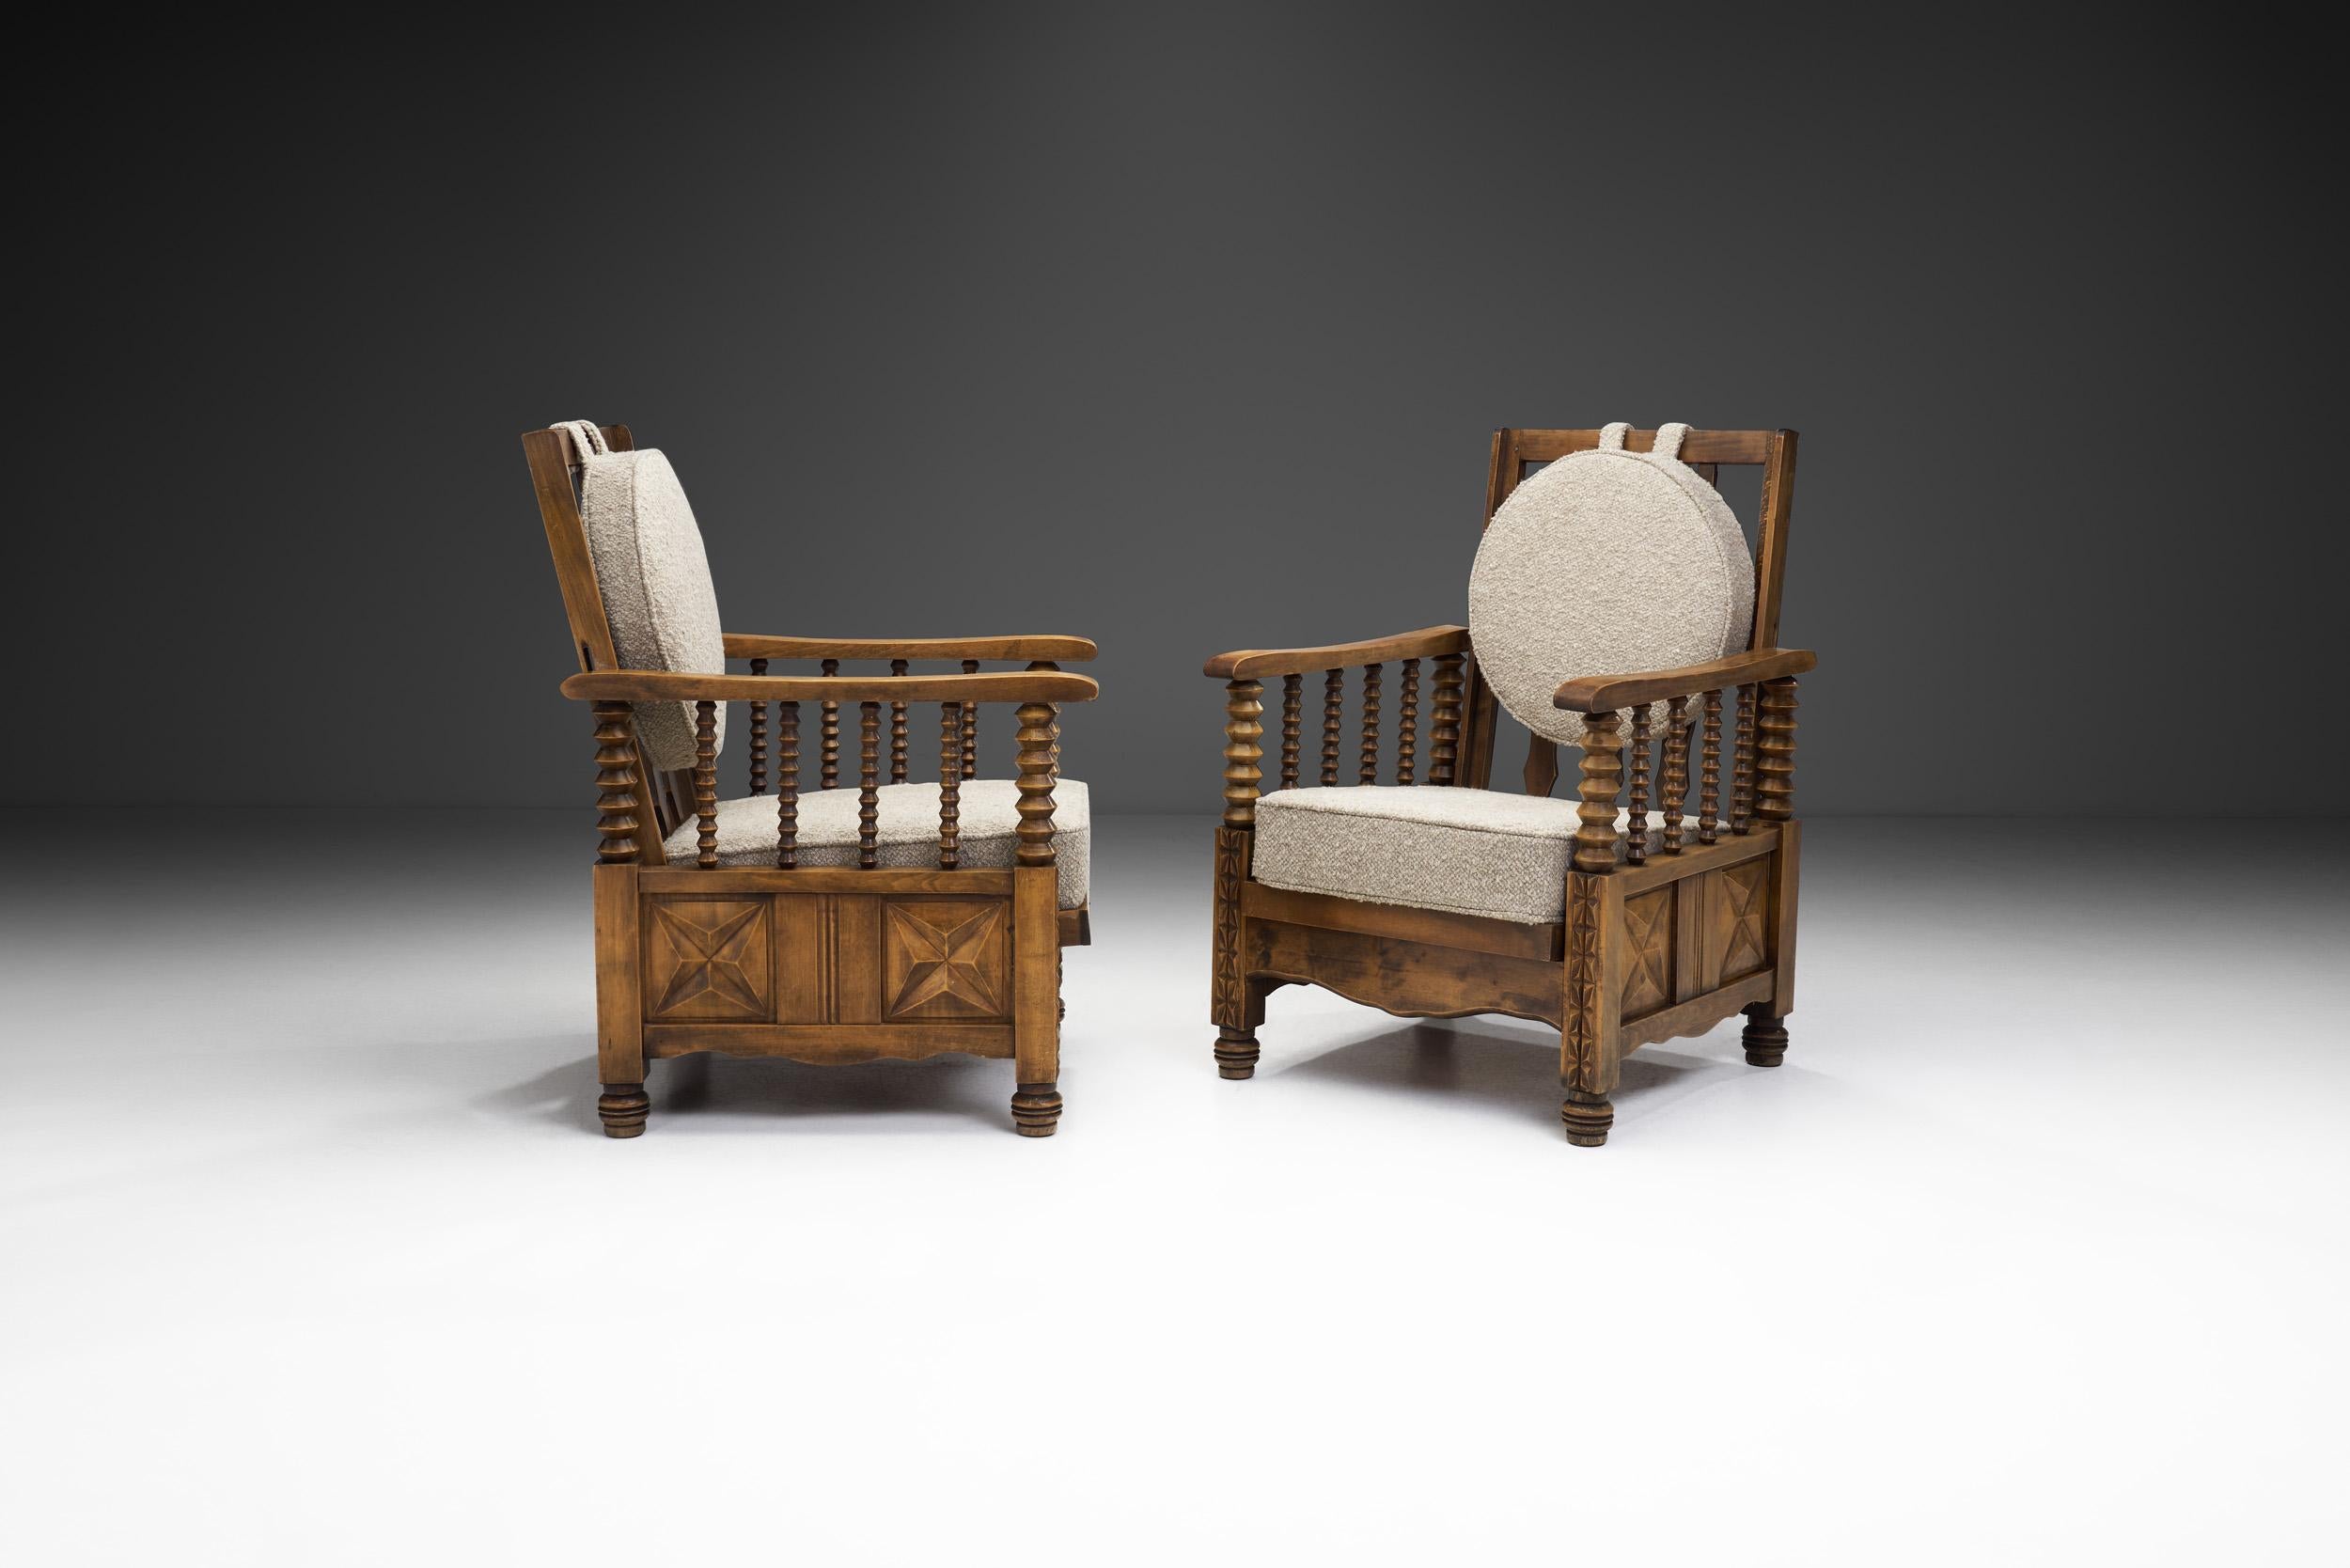 Im Bereich der Mid-Century-Möbel gibt es gedrechselte Möbel mit historischem Charme, die zeitlose Eleganz und Handwerkskunst ausstrahlen und an das Designgefühl früherer Epochen anknüpfen. Diese Sessel aus exquisitem gebeiztem Eichenholz sind